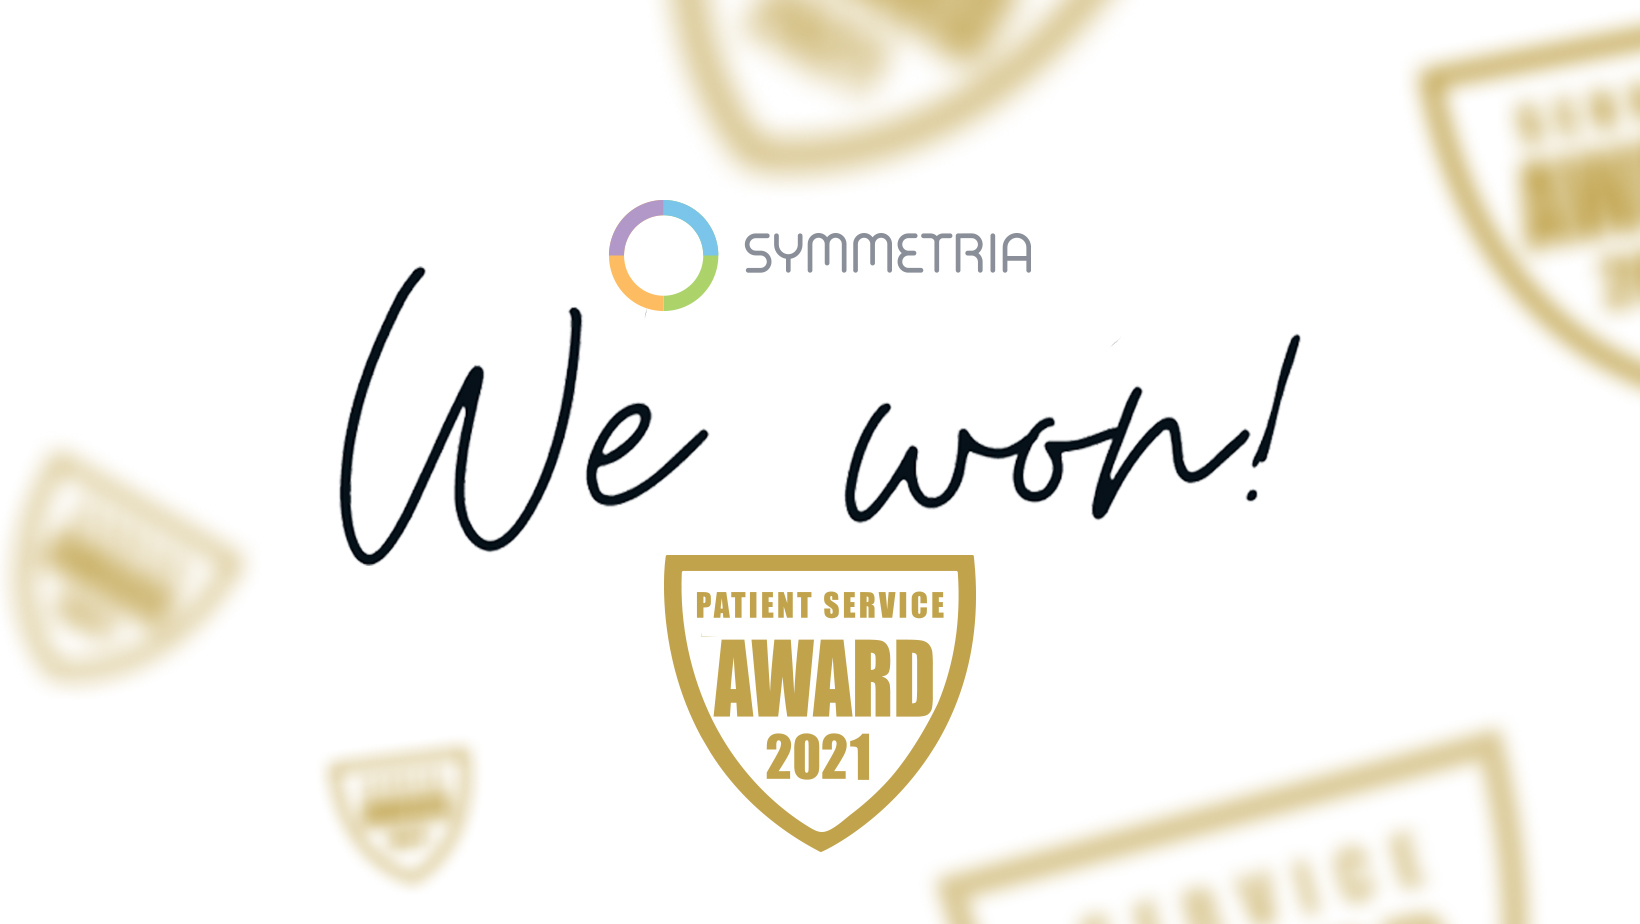 Η SYMMETRIA λαμβάνει ακόμη ένα βραβείο, αυτή τη φορά από τη WhatClinic.com για τις άψογες υπηρεσίες της.